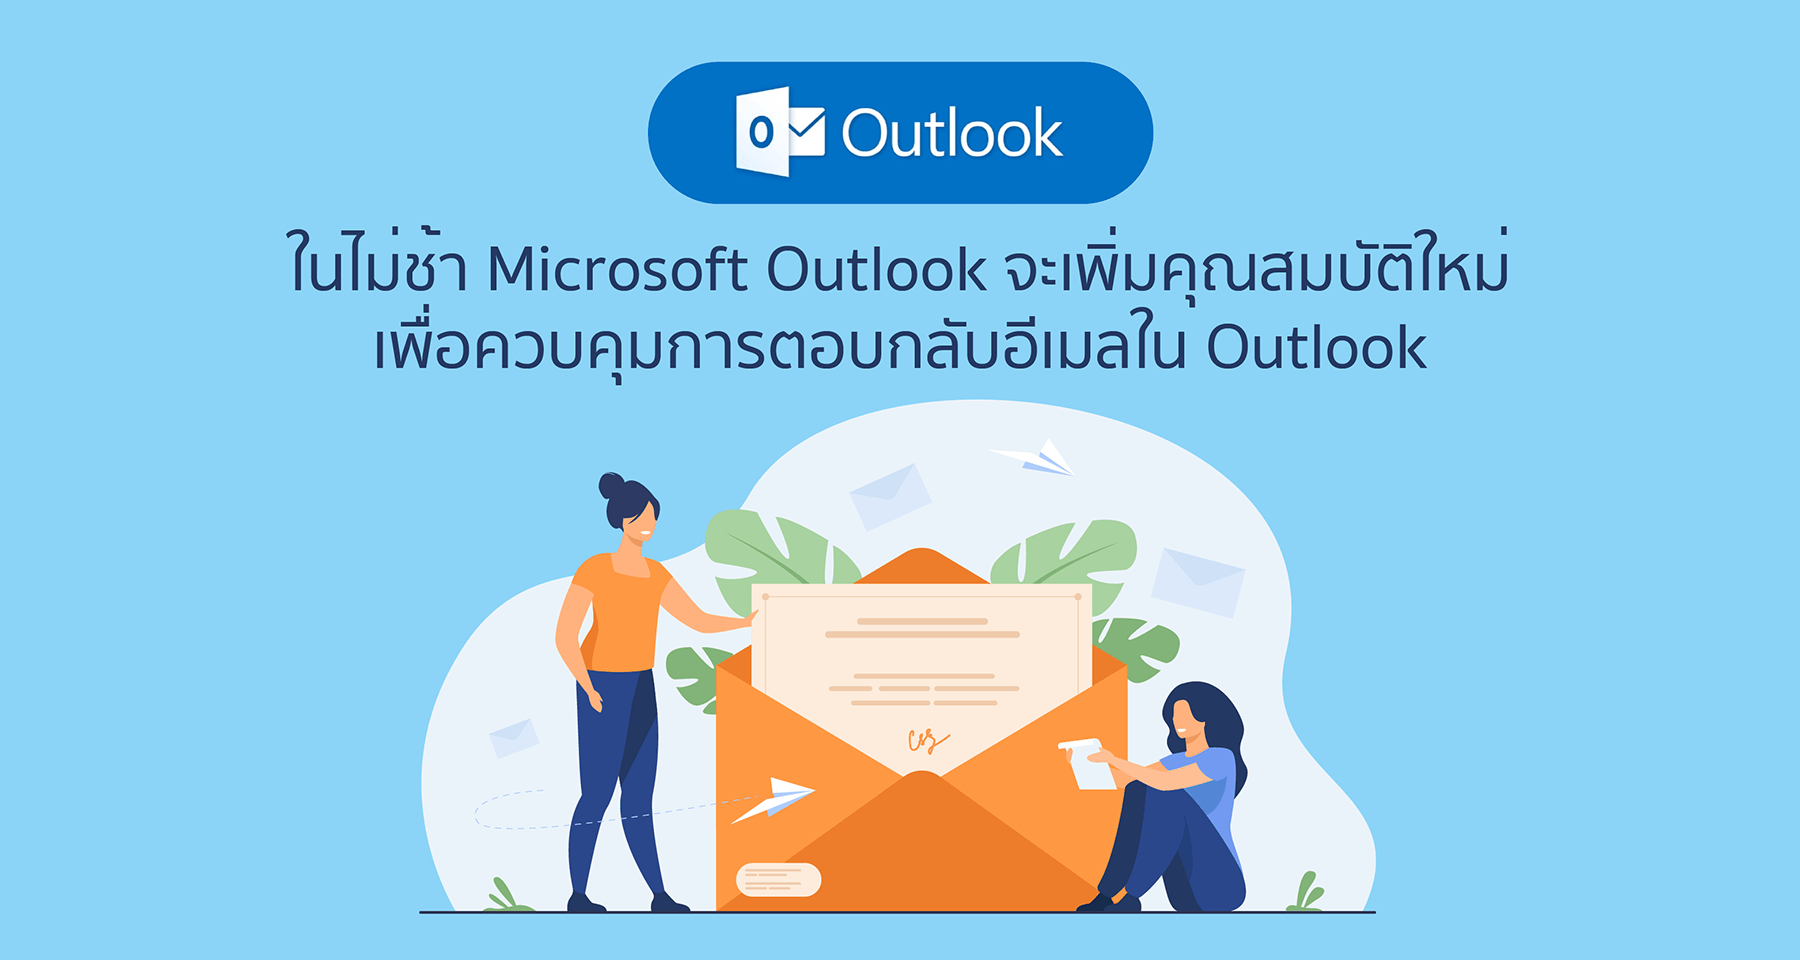 ในไม่ช้า Microsoft Outlook จะเพิ่มคุณสมบัติใหม่เพื่อควบคุมการตอบกลับอีเมลใน Outlook